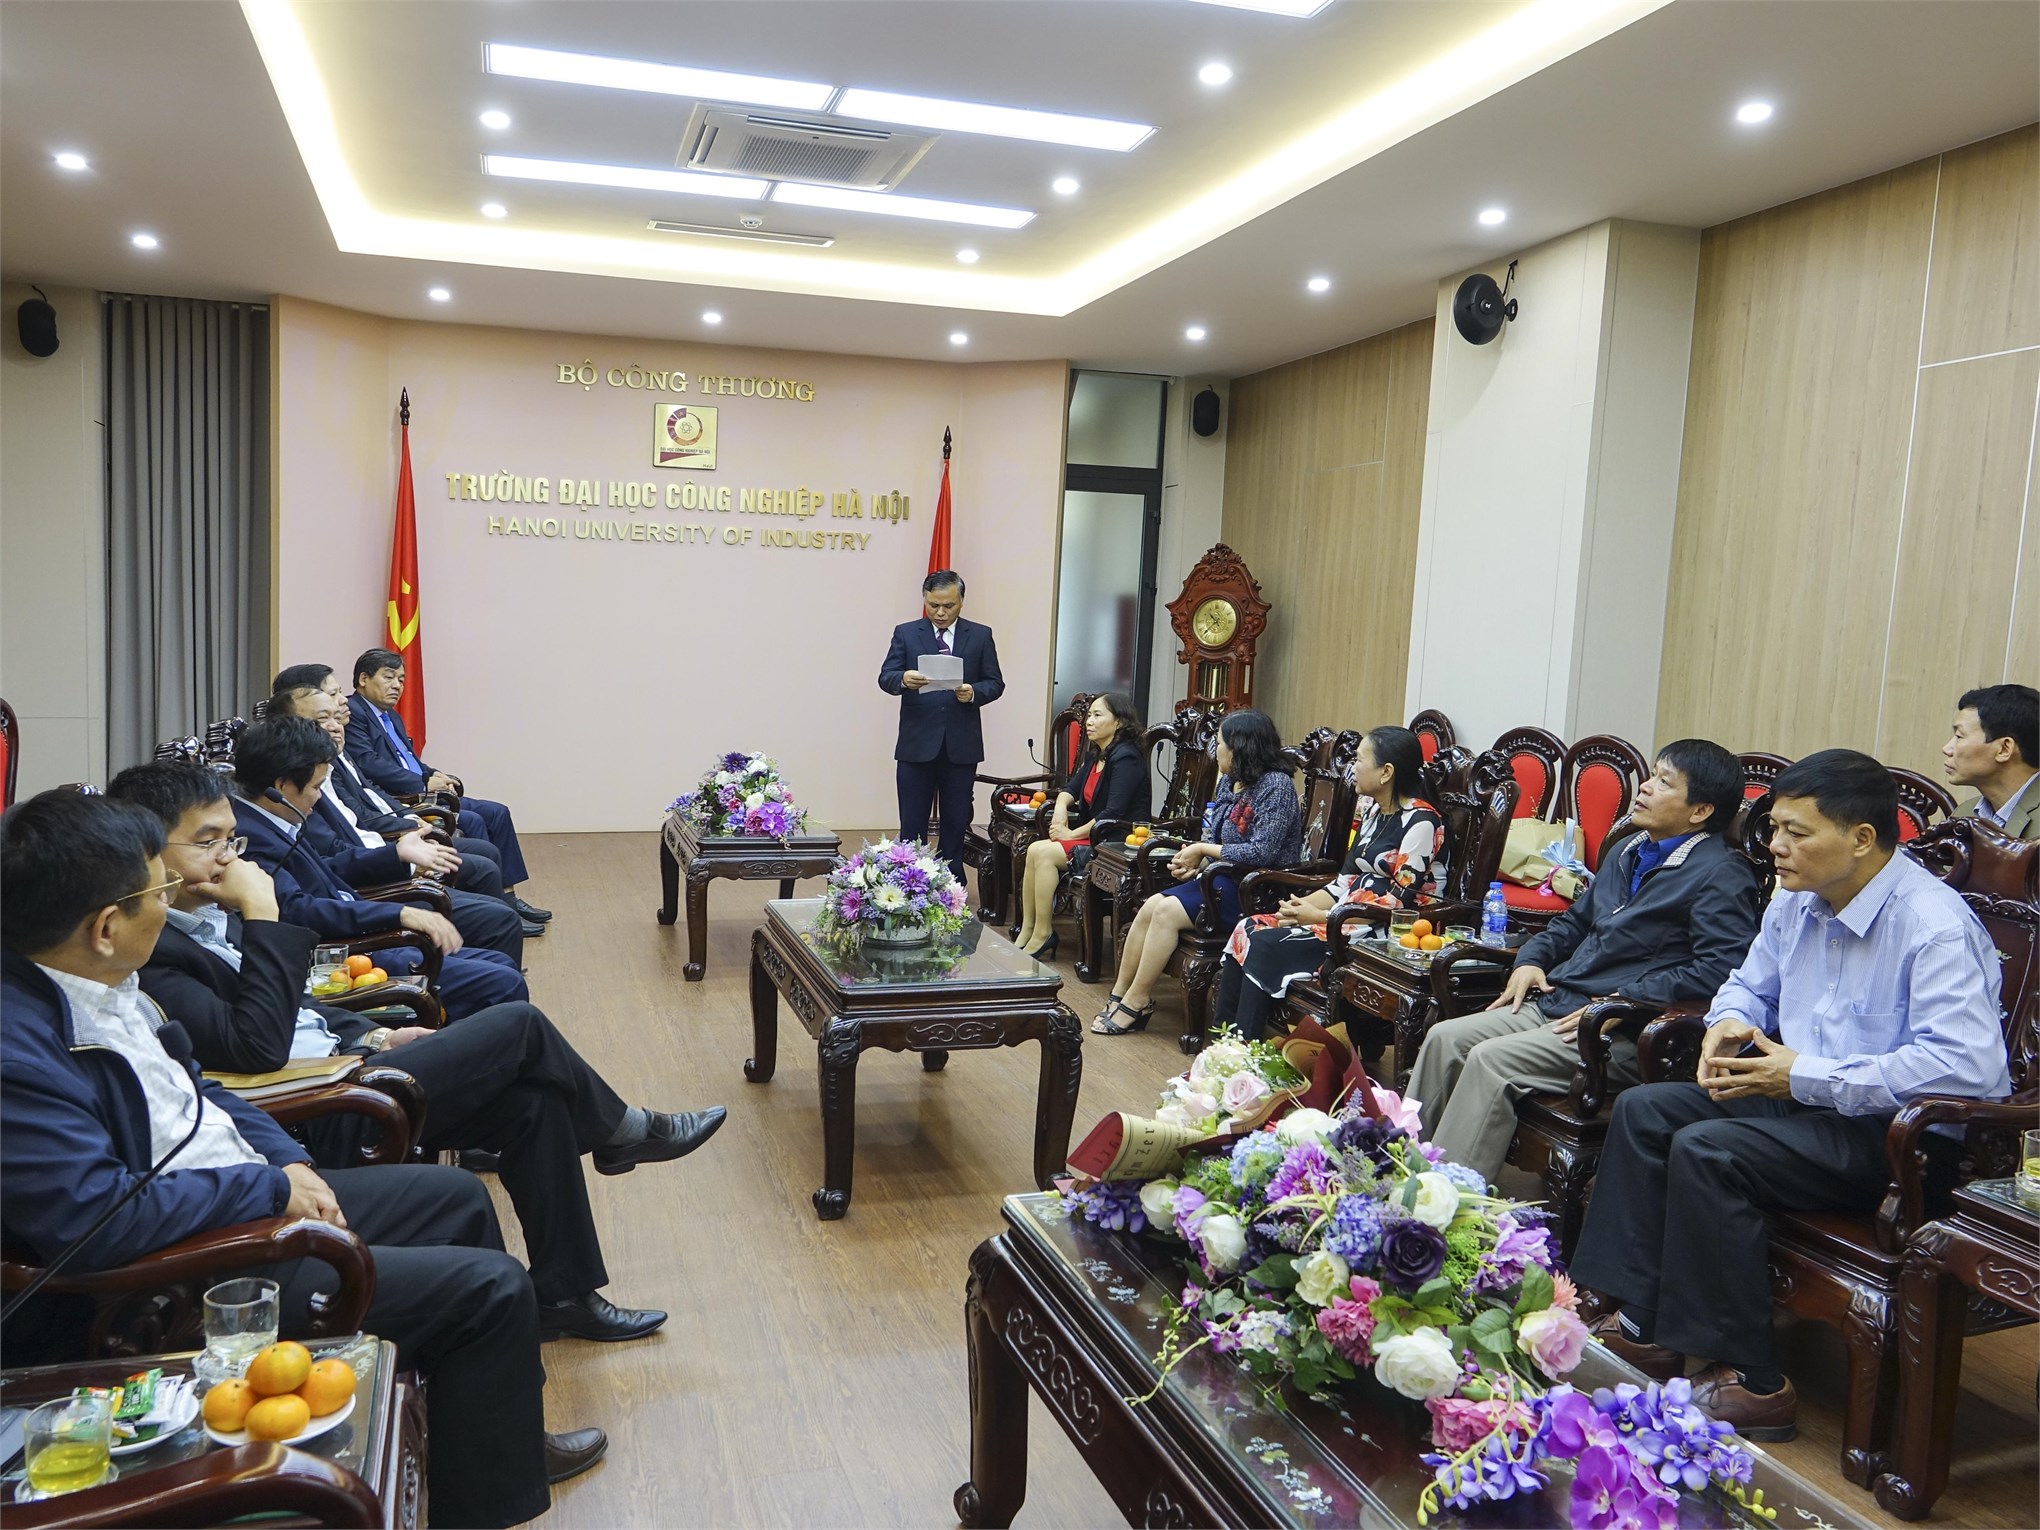 Đồng chí Nguyễn Văn Hùng – nguyên Thường vụ Đảng ủy, nguyên Phó ban Quản lý dự án đại diện các viên chức nghỉ hưu phát biểu cảm xúc trong buổi gặp mặt 